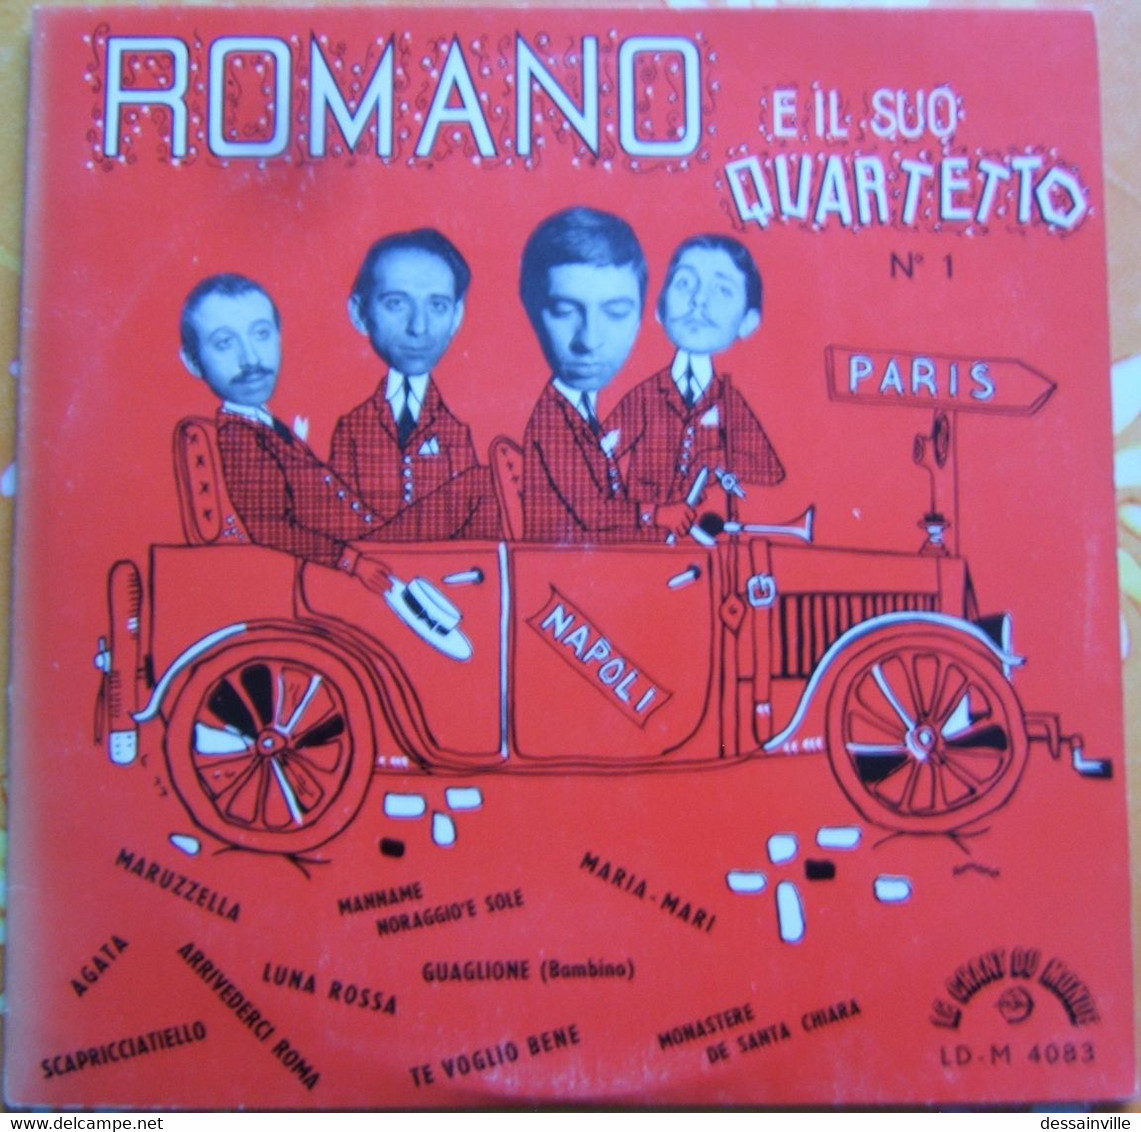 33 Tours 25 Cm - ROMANO E Il Suo Quartetto N° 1 - Altri - Musica Italiana